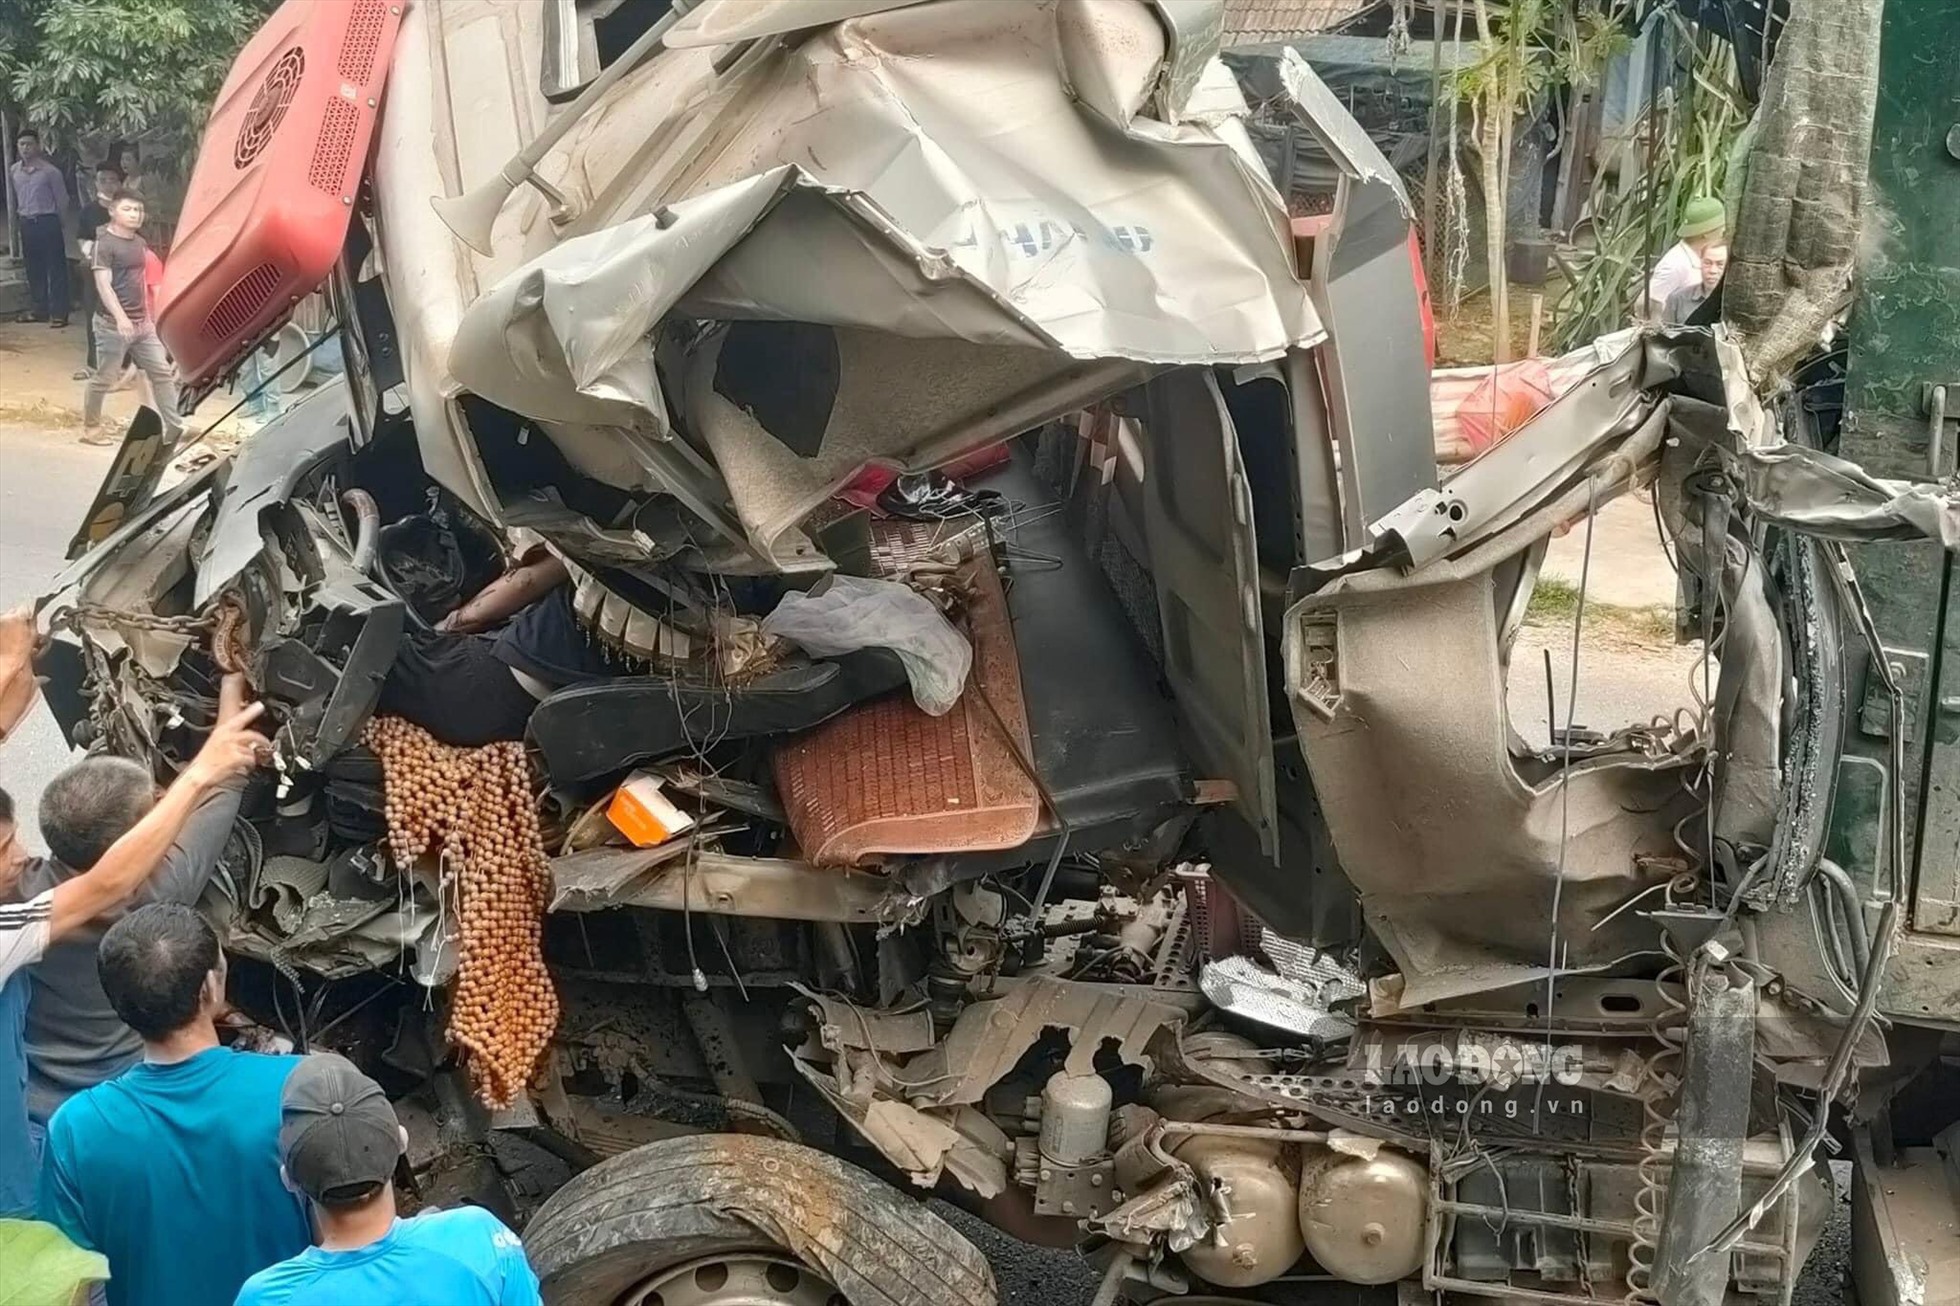 Phần đầu xe sau vụ tai nạn đã bị biến dạng, hư hỏng nặng. Ảnh: Nguyễn Hoàn